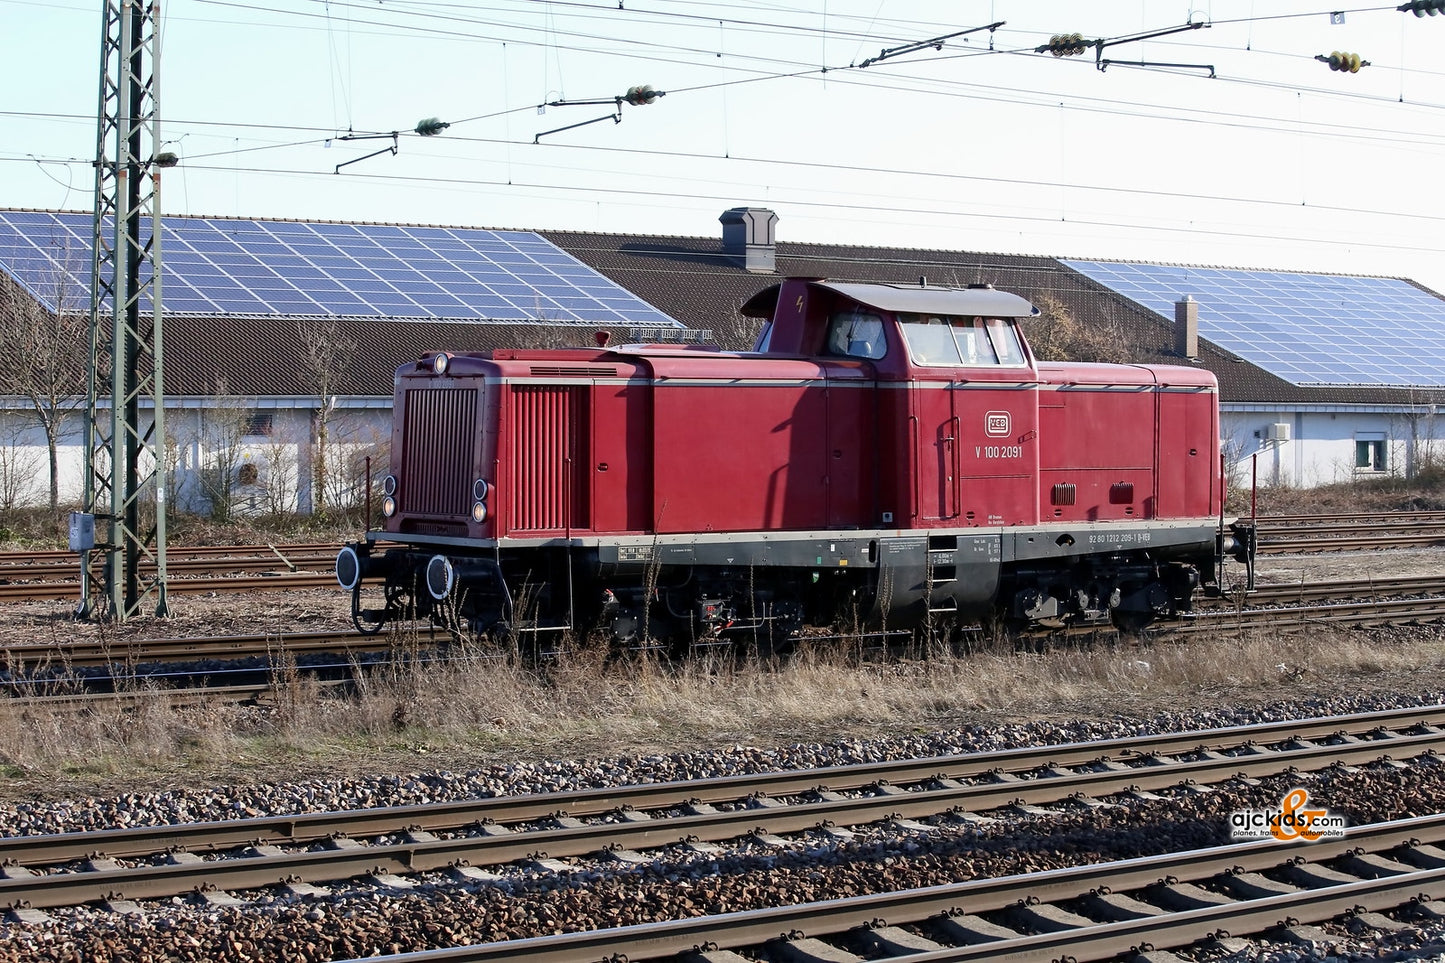 Marklin 37008 - Class V 100.20 Diesel Locomotive (Telex)